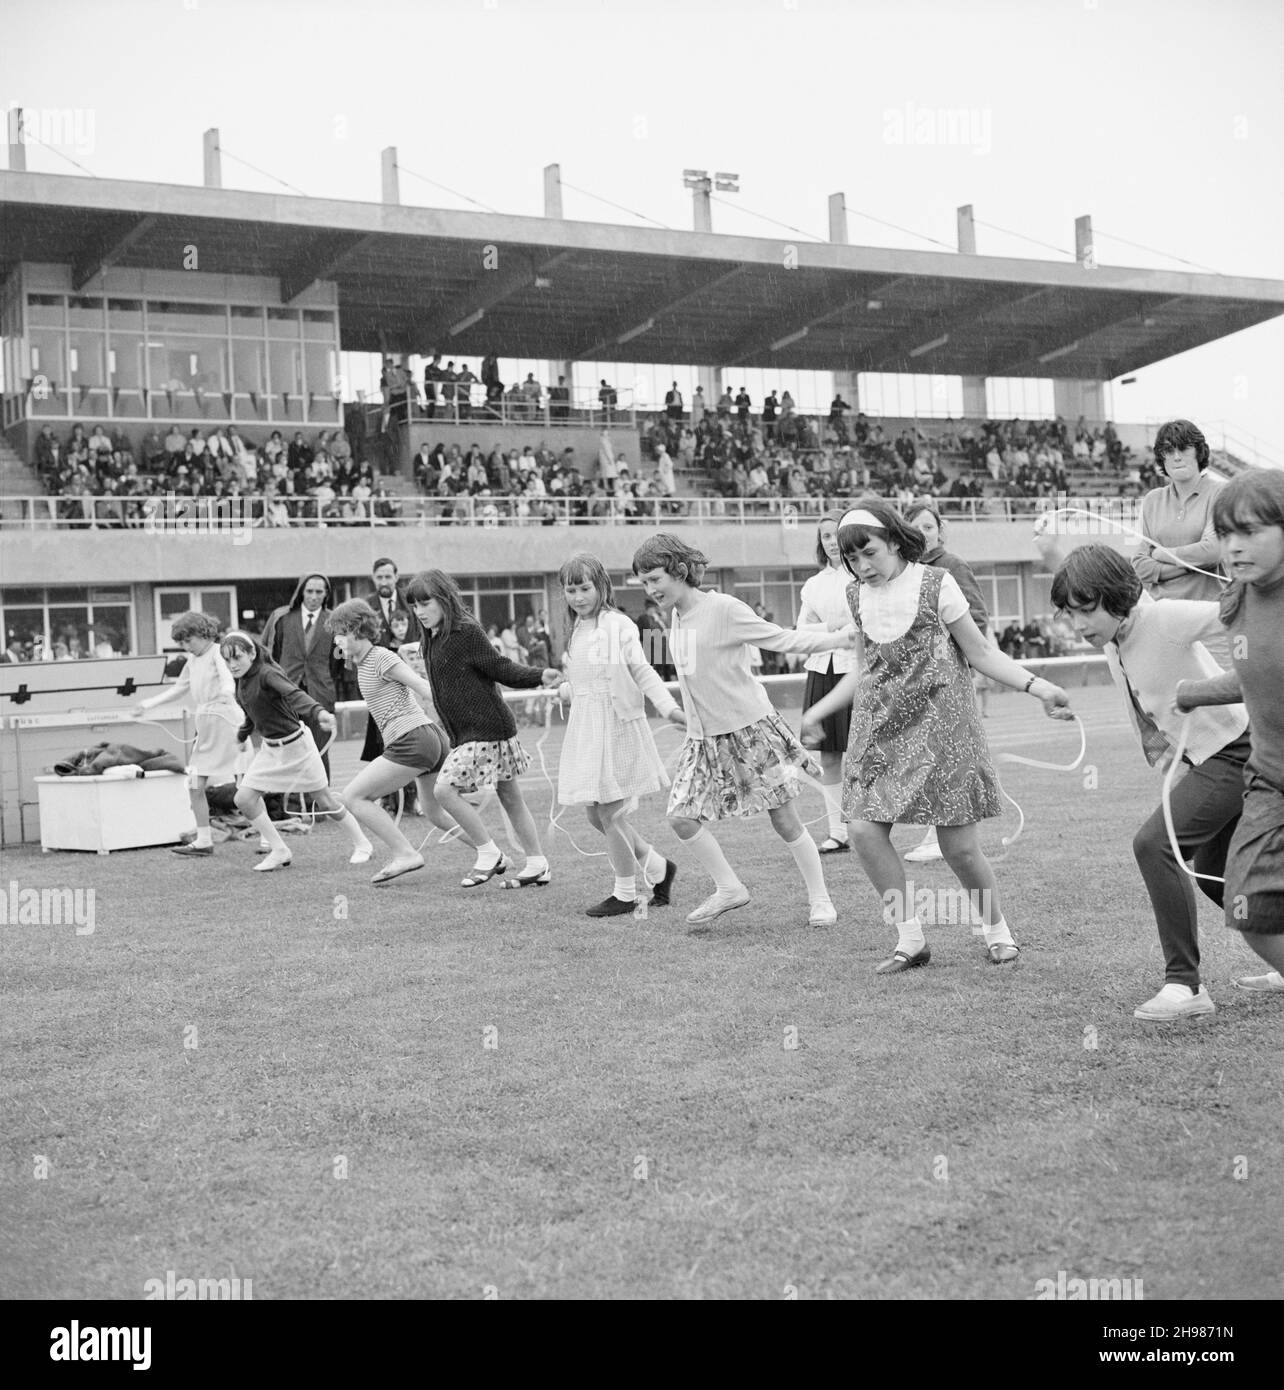 Stade Copthall, Hendon, Barnett, Londres, 25/06/1966.Des filles avec des cordes à sauter alignées au début d'une course à sauter, avec des spectateurs dans un stand au-delà, à la Journée annuelle des sports de Laing qui s'est tenue au stade Copthall.En 1966, la Journée annuelle des sports des employés de Laing a eu lieu le 25 juin au stade Copthall à Hendon.C'était la première fois que l'événement s'y tenait, ayant eu lieu auparavant le terrain de sport de Laing à Elstree.Parmi les différents événements, on compte l'athlétisme et une compétition de football, et les concurrents ont voyagé depuis les bureaux et sites régionaux de la société, notamment en Écosse et en voiture Banque D'Images